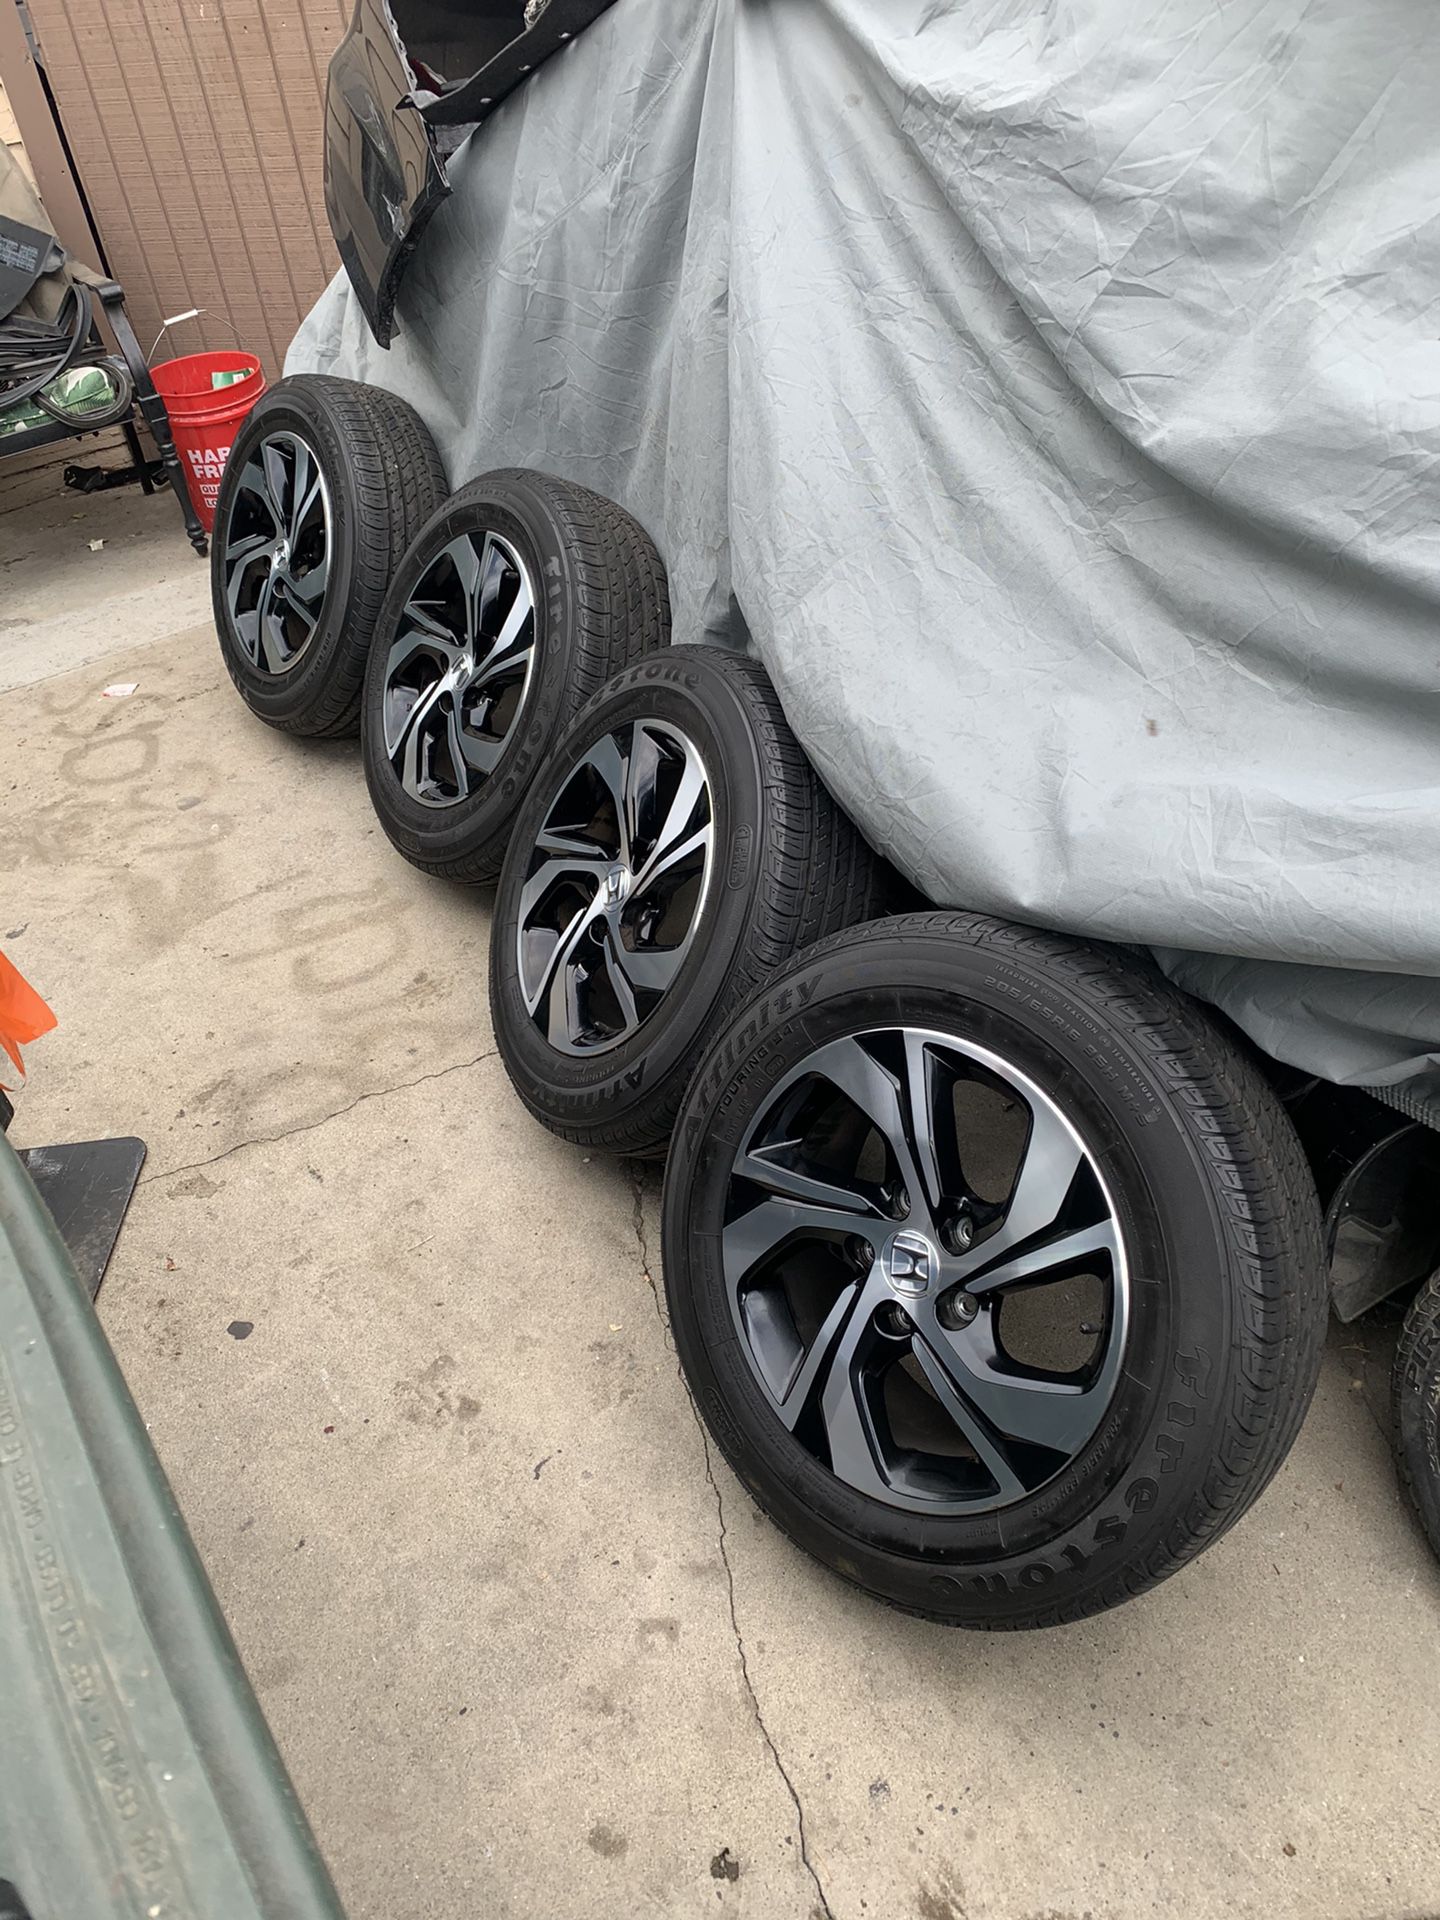 2018 Honda 16 inch aluminum wheels